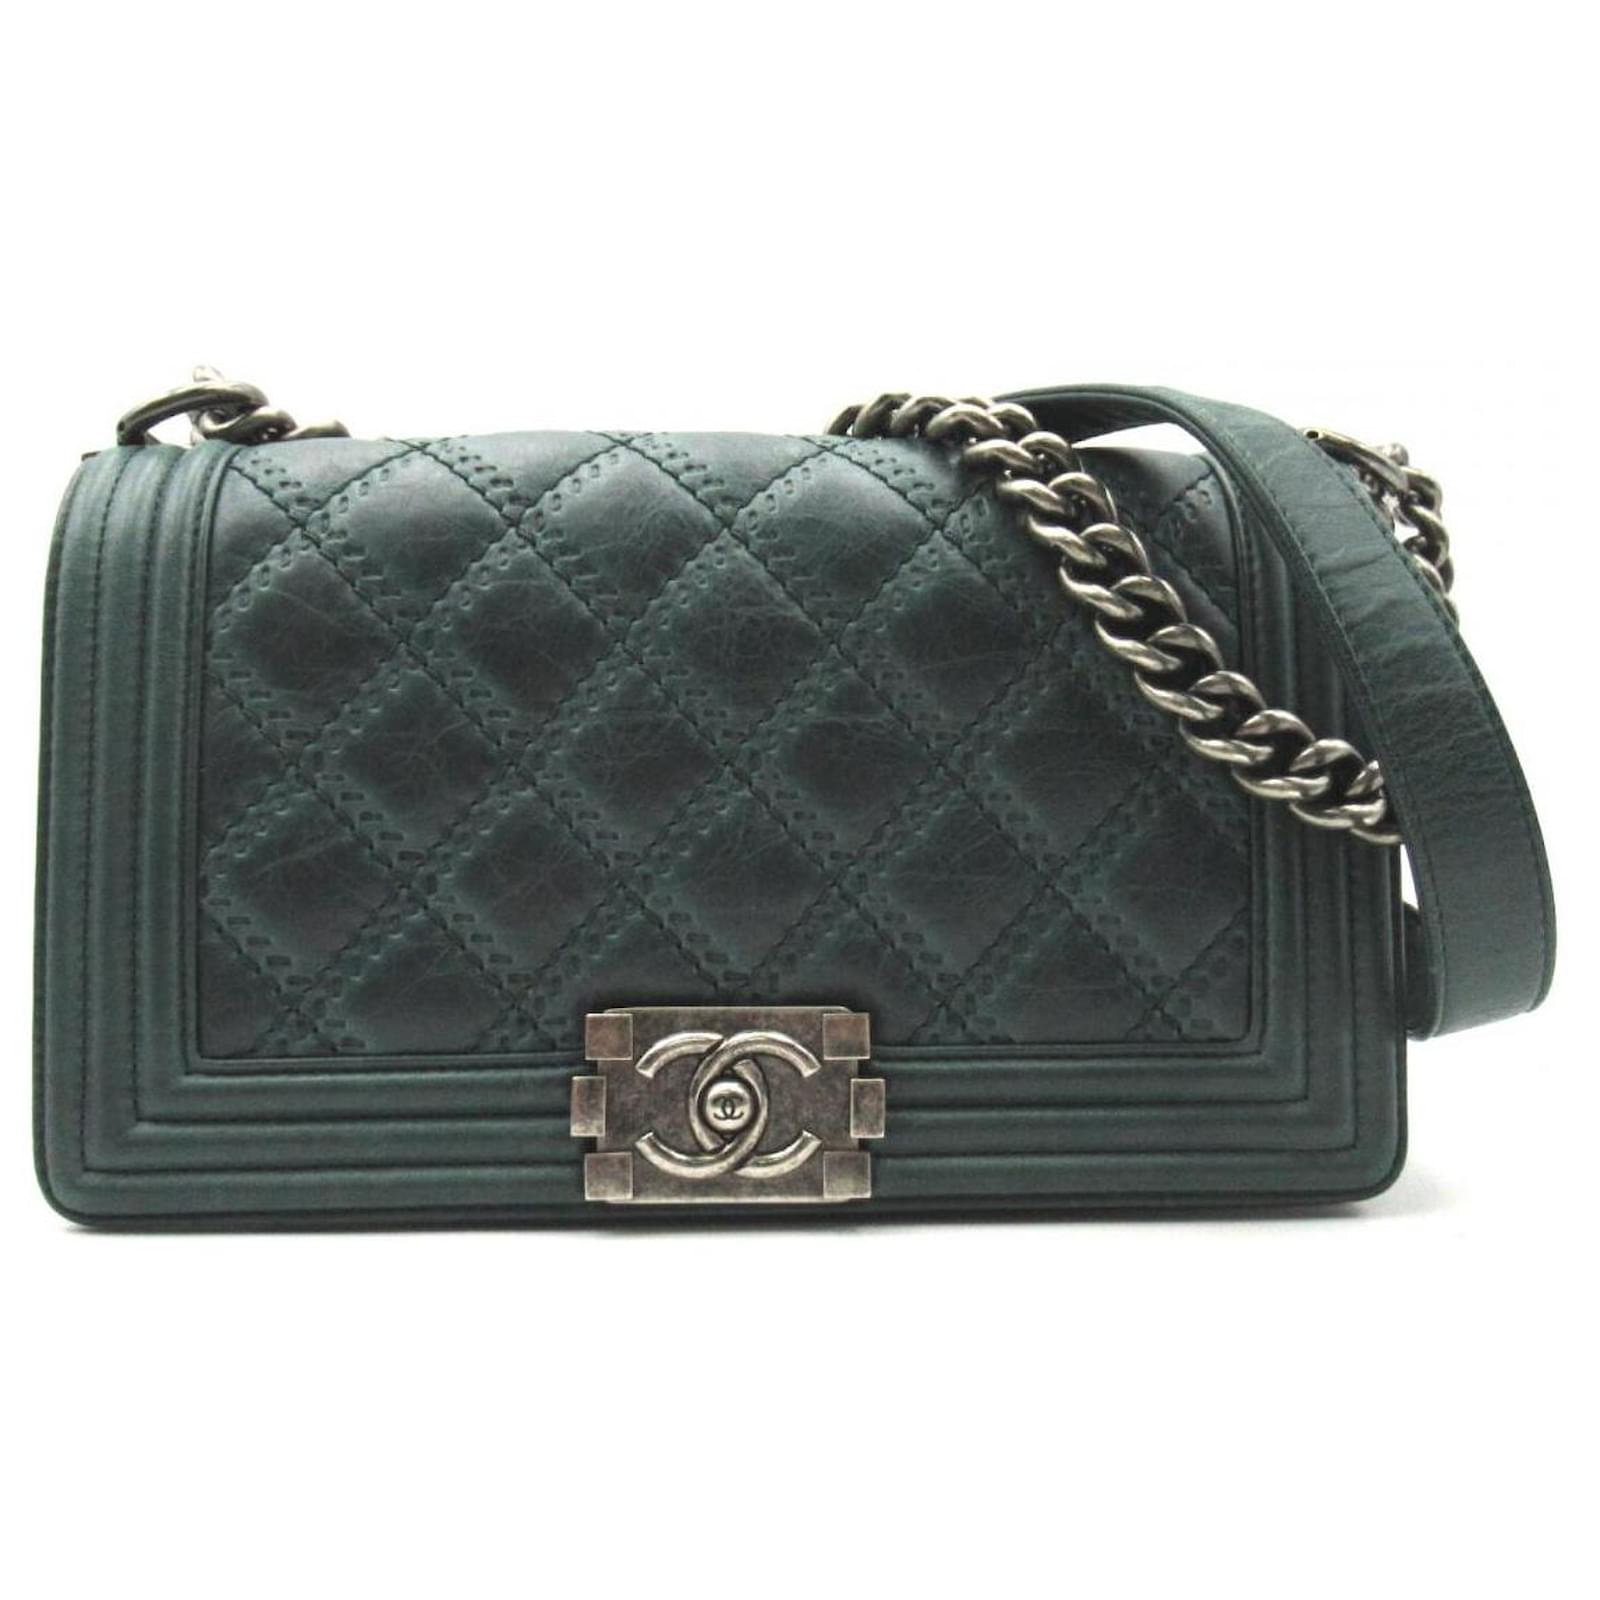 Chanel Le Boy Medium Flap Bag Caviar Leather Black